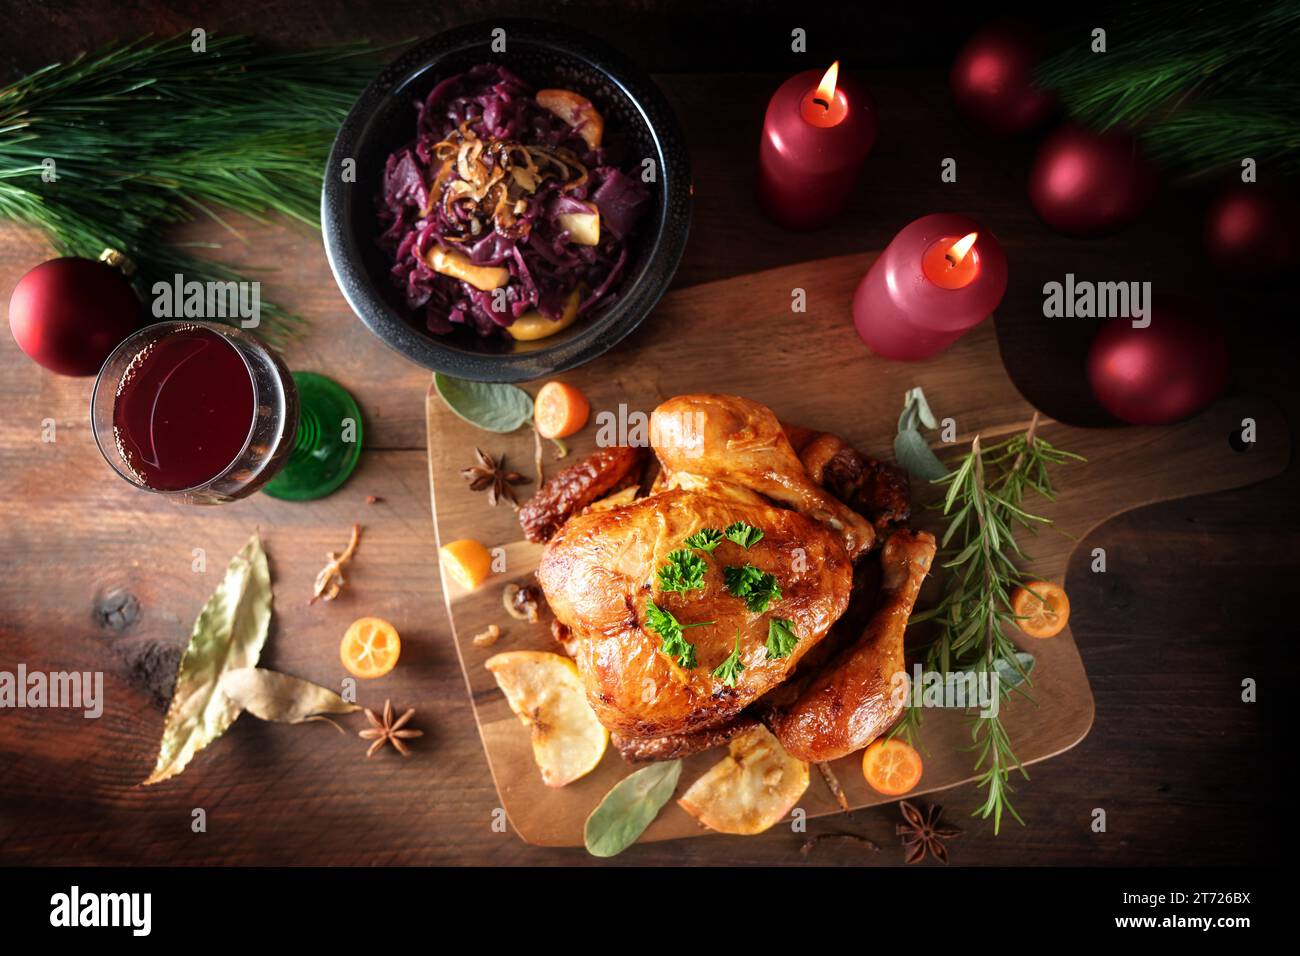 Pollo arrosto con cavolo rosso e vino su legno rustico scuro con candele e decorazioni natalizie, cena a base di pollame per le festività, vista dall'alto Foto Stock